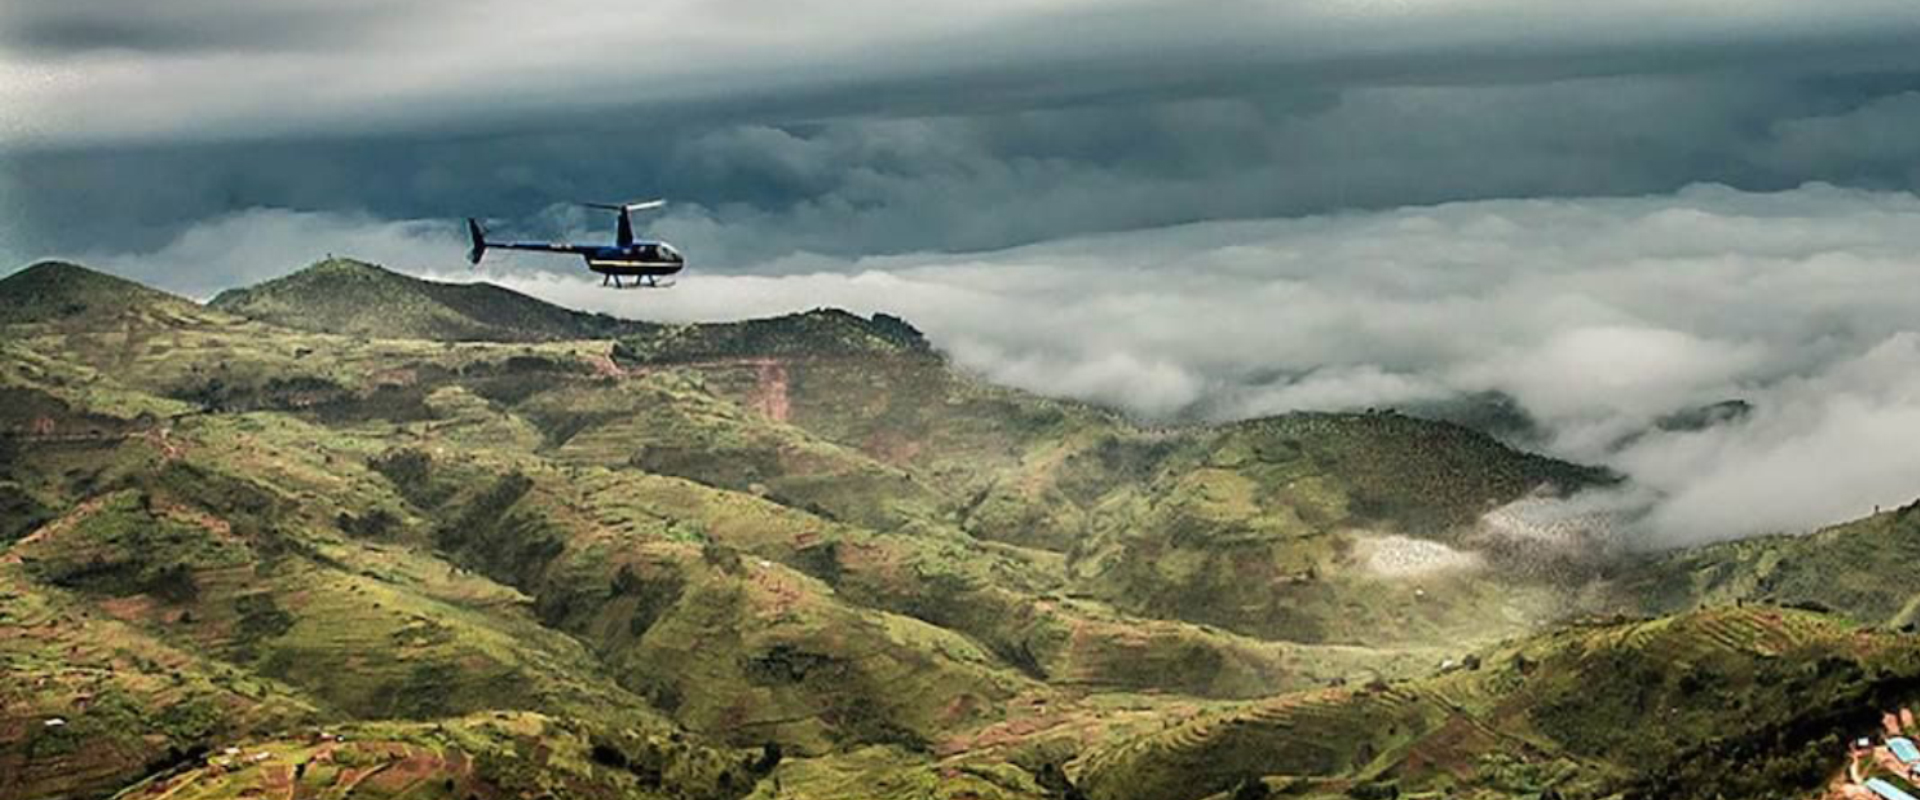 Pegue um voo de helicóptero sobre o campo de Ruanda